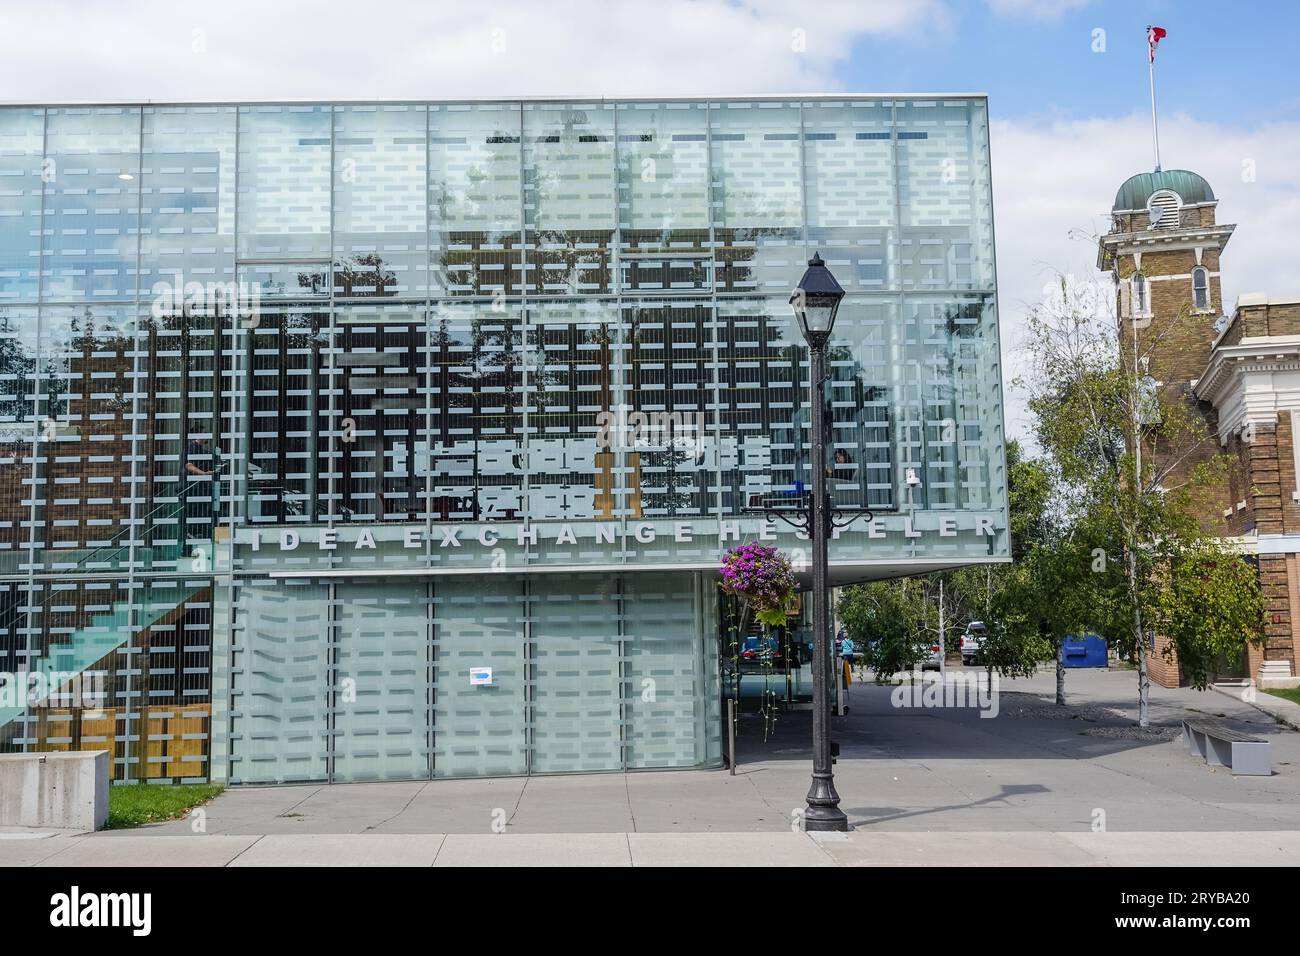 Das Hespeler Library Building in Cambridge, Ontario, Kanada, ist eine Fusion-Architektur mit einer modernen Glasfassade, die ein altes Gebäude umgibt Stockfoto